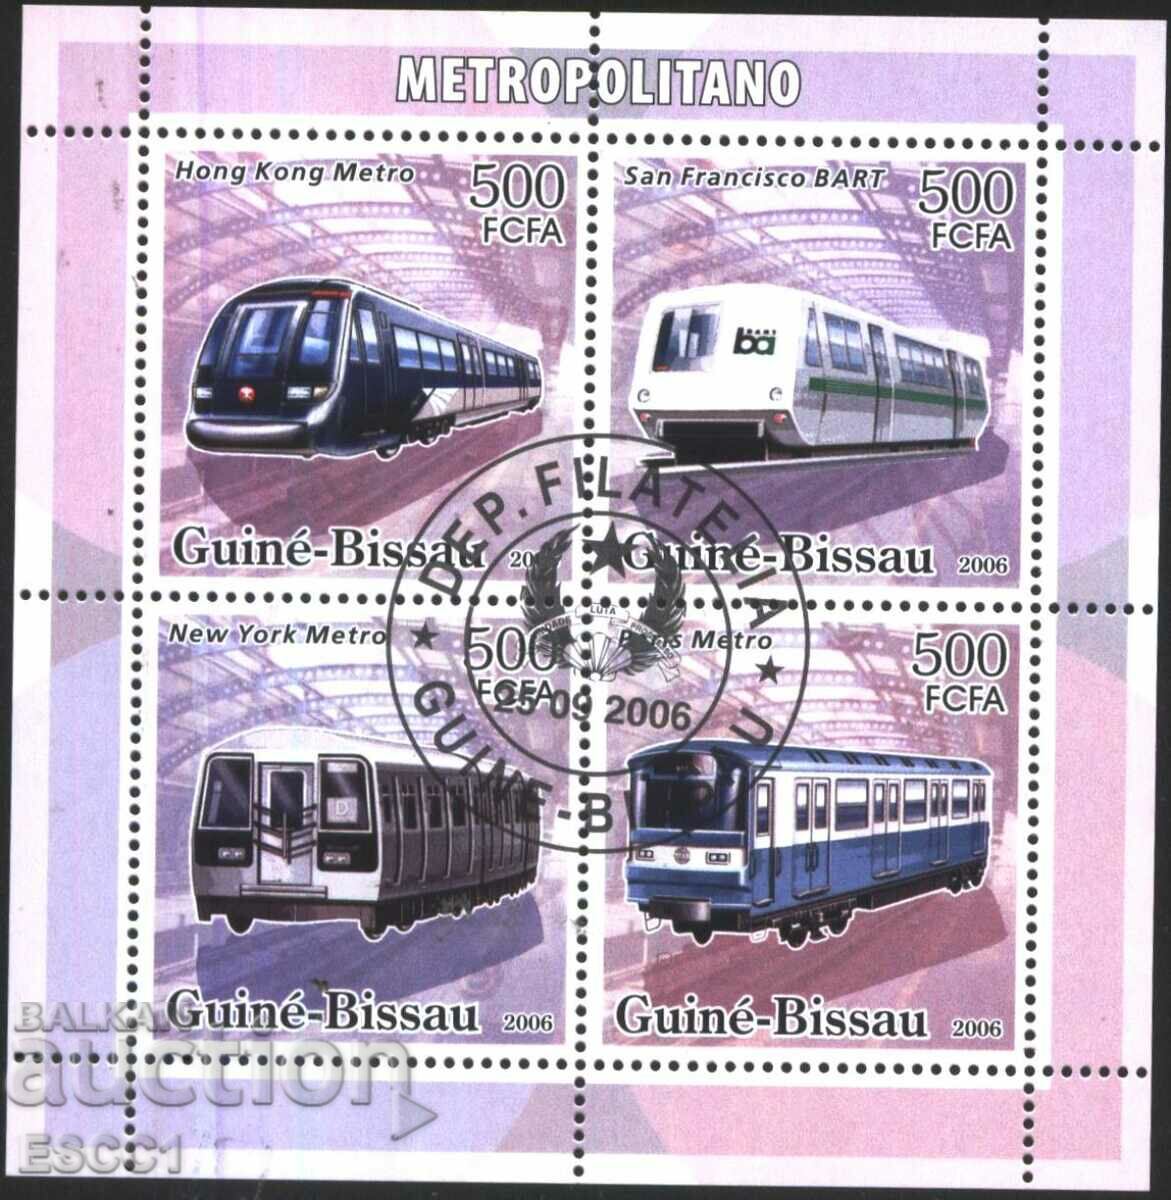 Σφραγισμένα γραμματόσημα σε μικρό φύλλο Metro 2006 από τη Γουινέα-Μπισάου